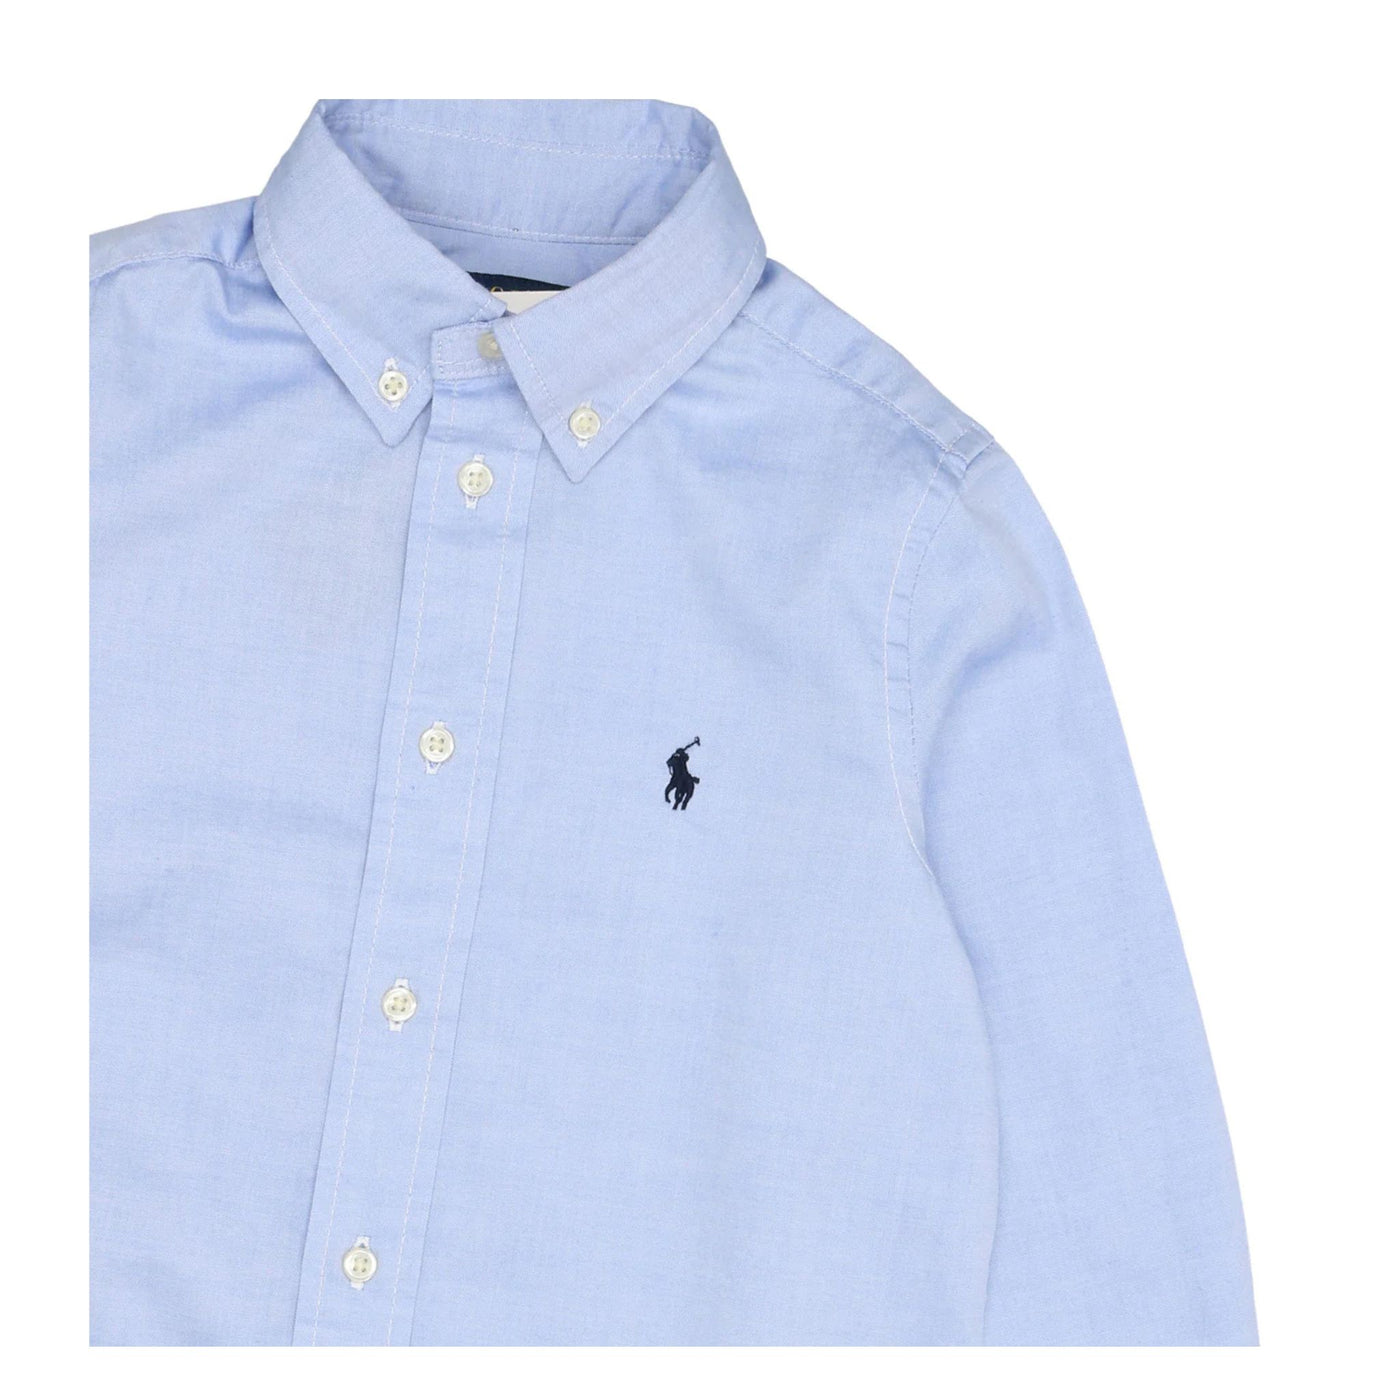 Camicia celeste  per bambino con logo Polo Ralph Lauren ricamato,chiusura con bottoni e colletto classico